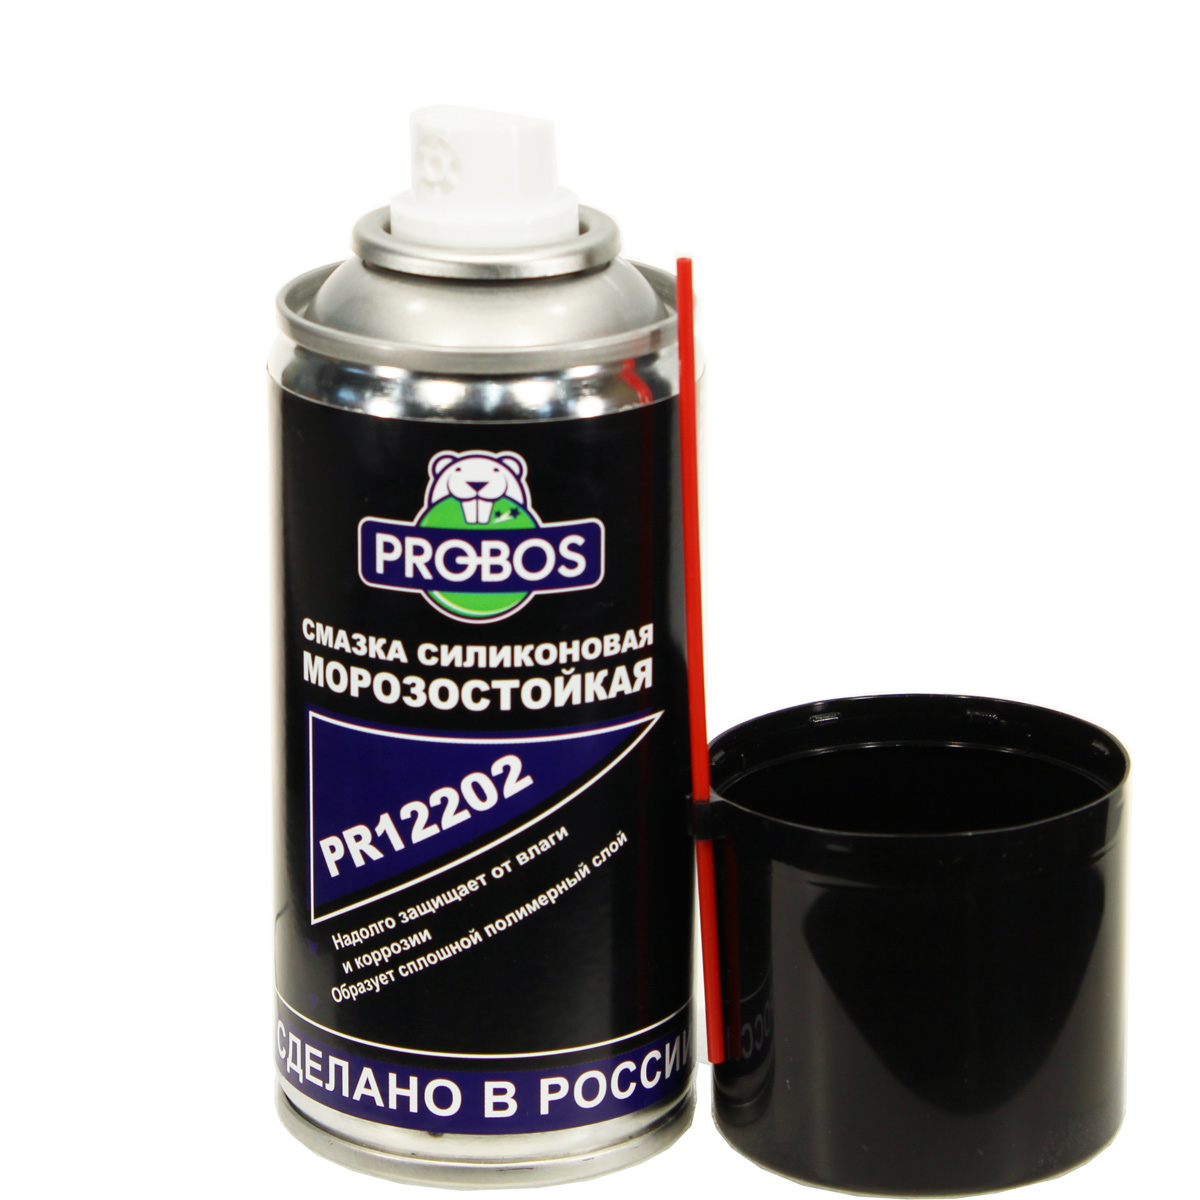 Смазка силиконовая морозостойкая PROBOS 210 мл, PR12202